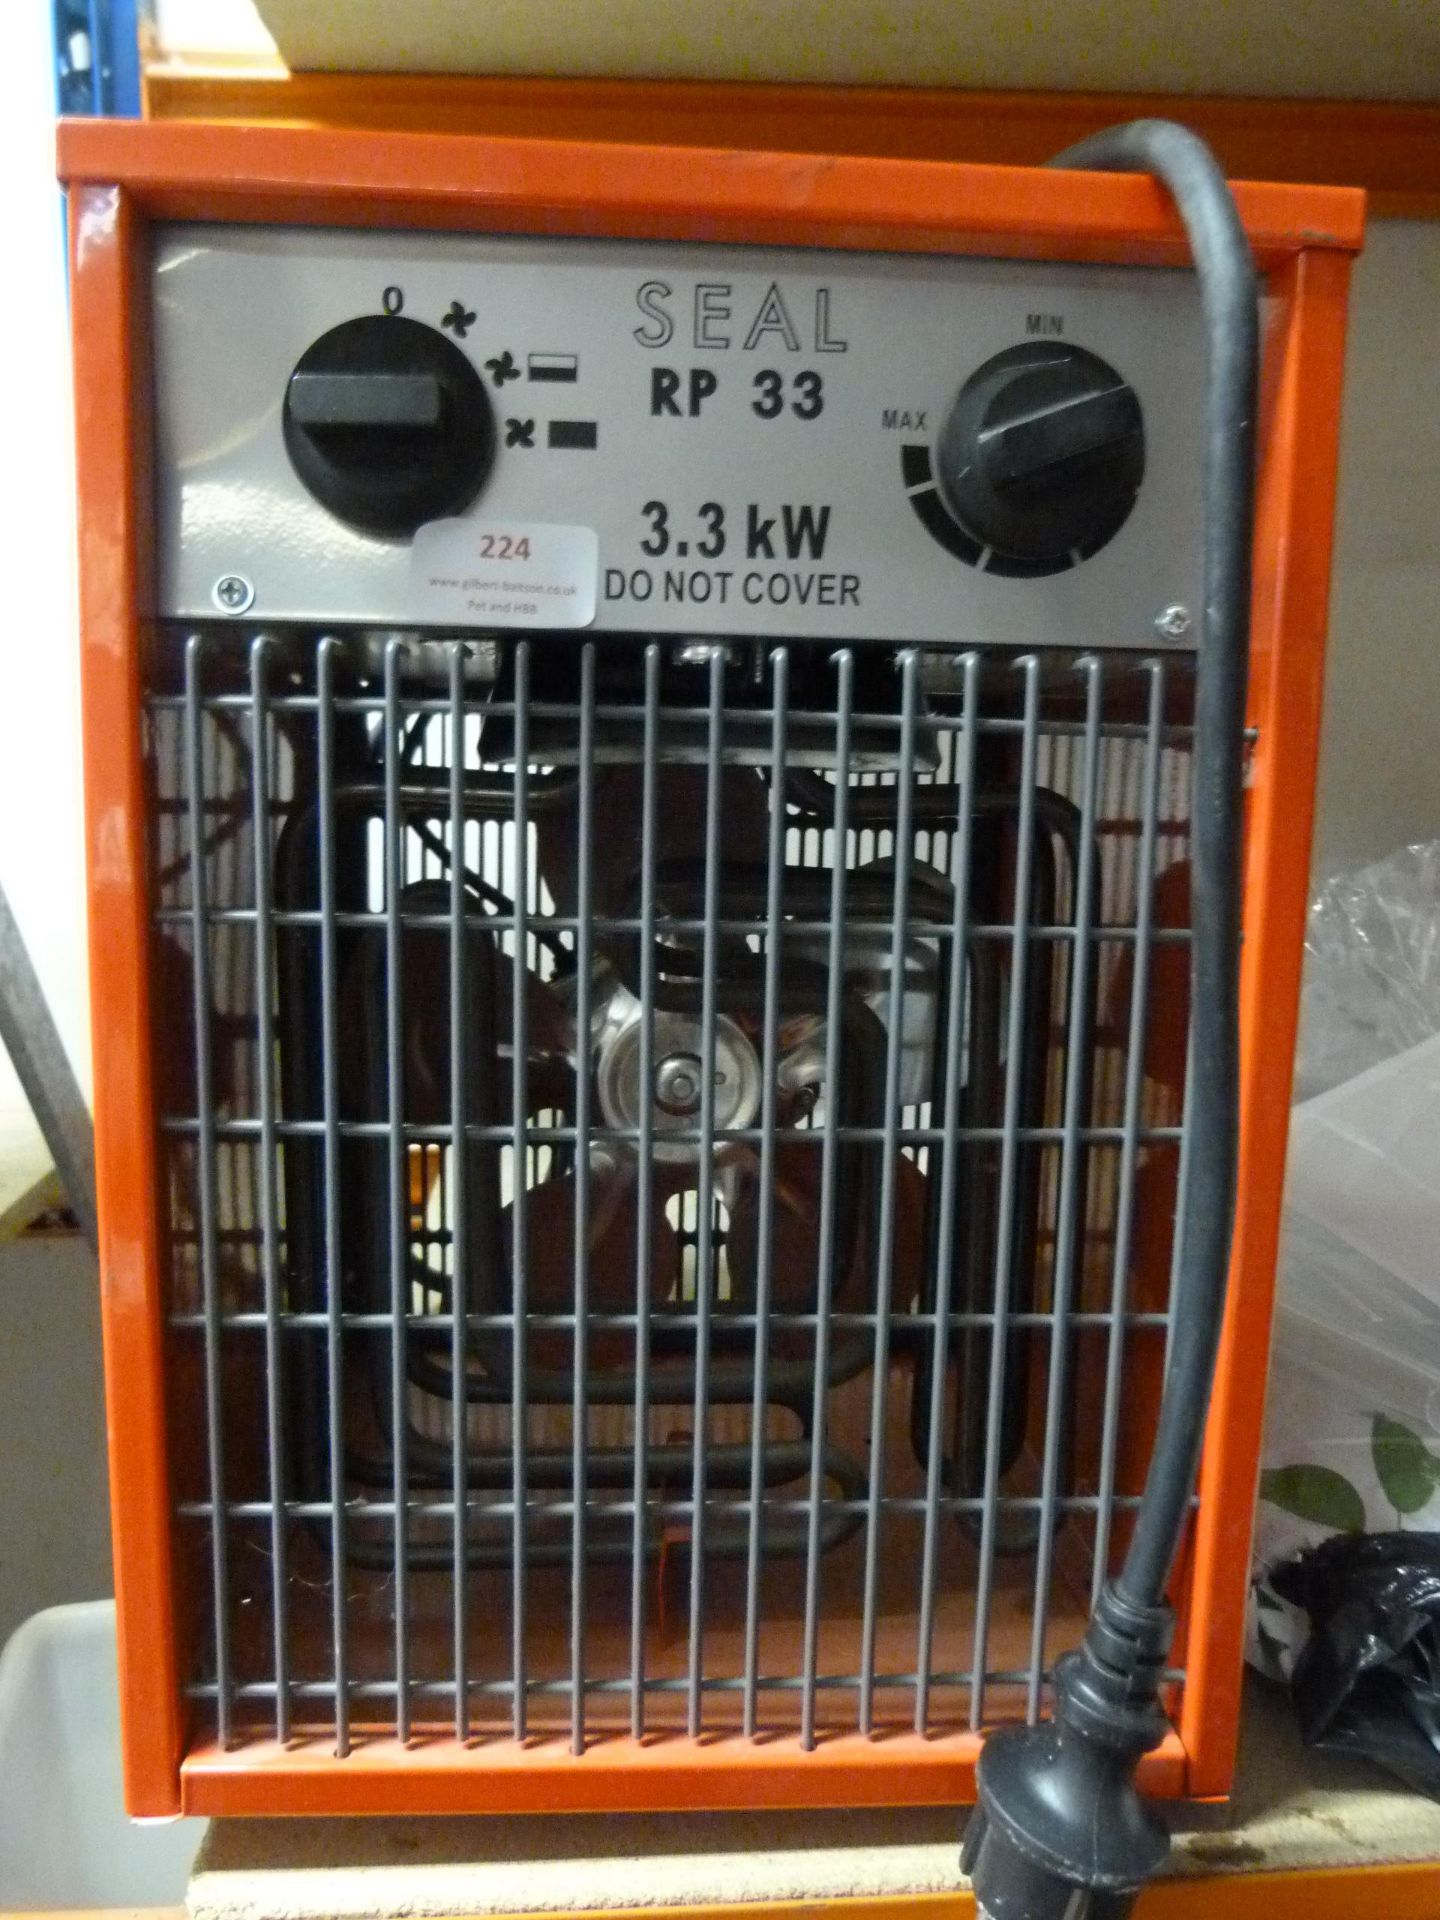 *Seal RP33 3.3kw Fan Heater